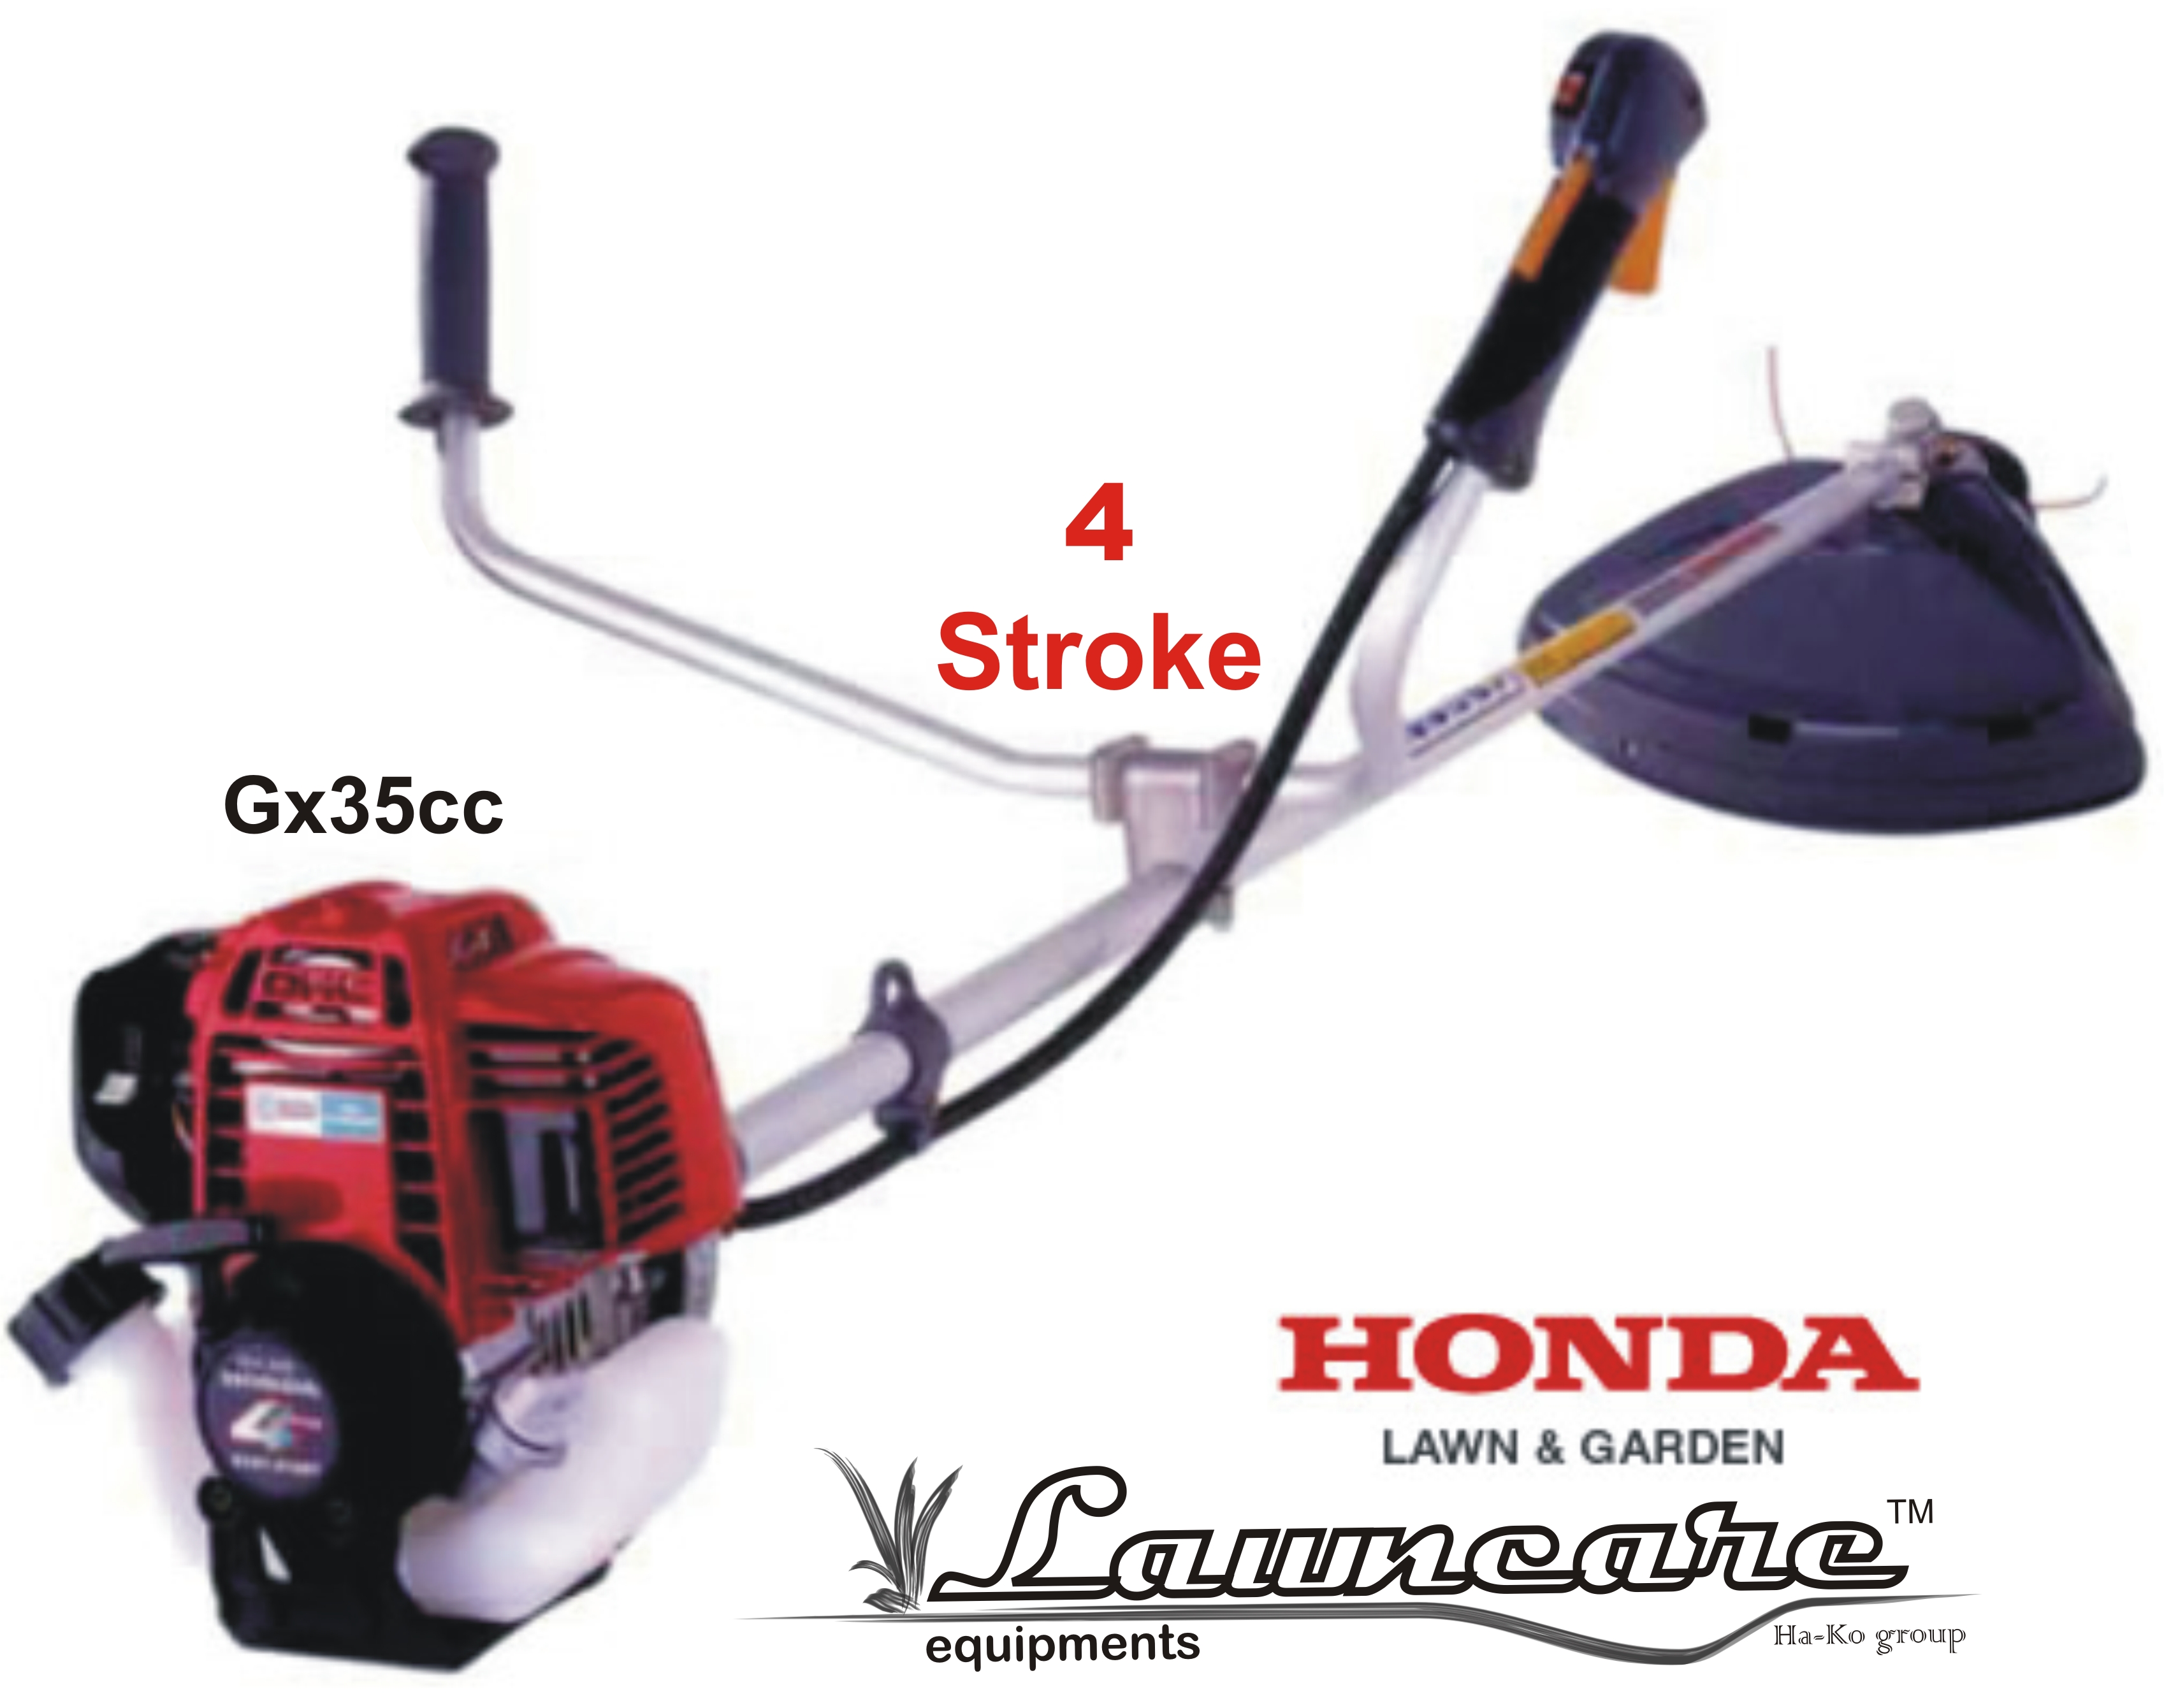 Honda brush cutter price list india #1